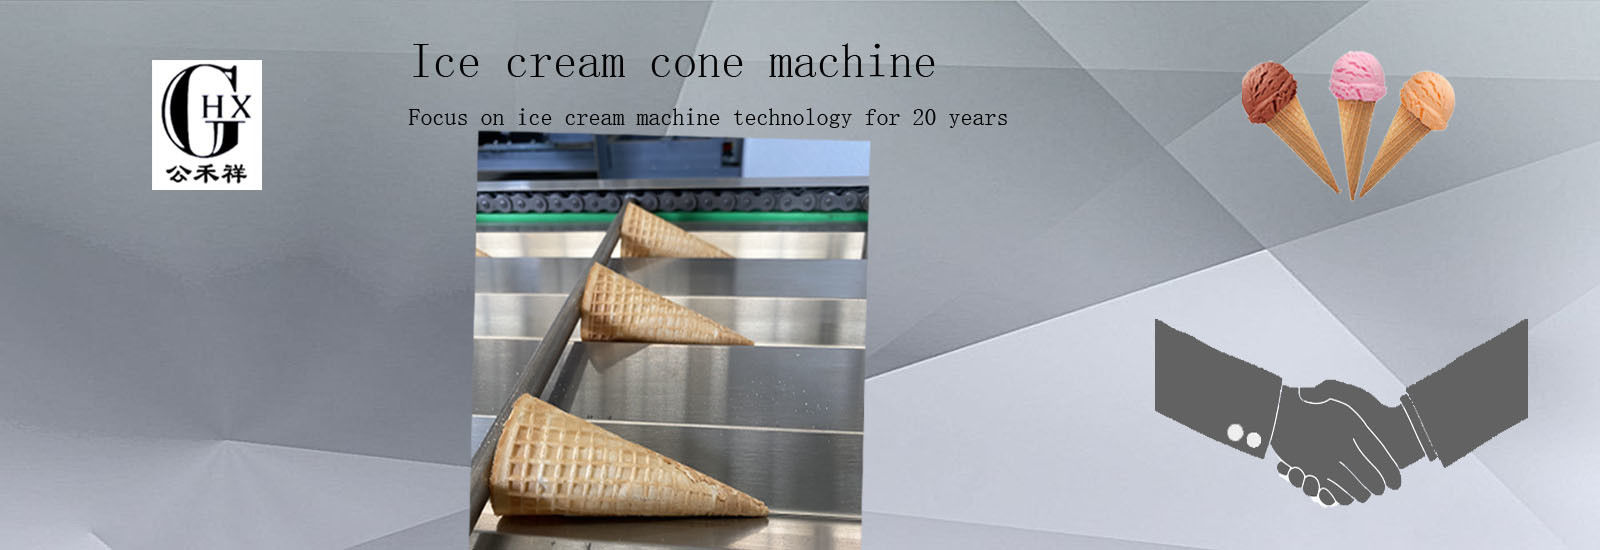 गुणवत्ता आइस क्रीम कोन बनाने की मशीन कारखाना